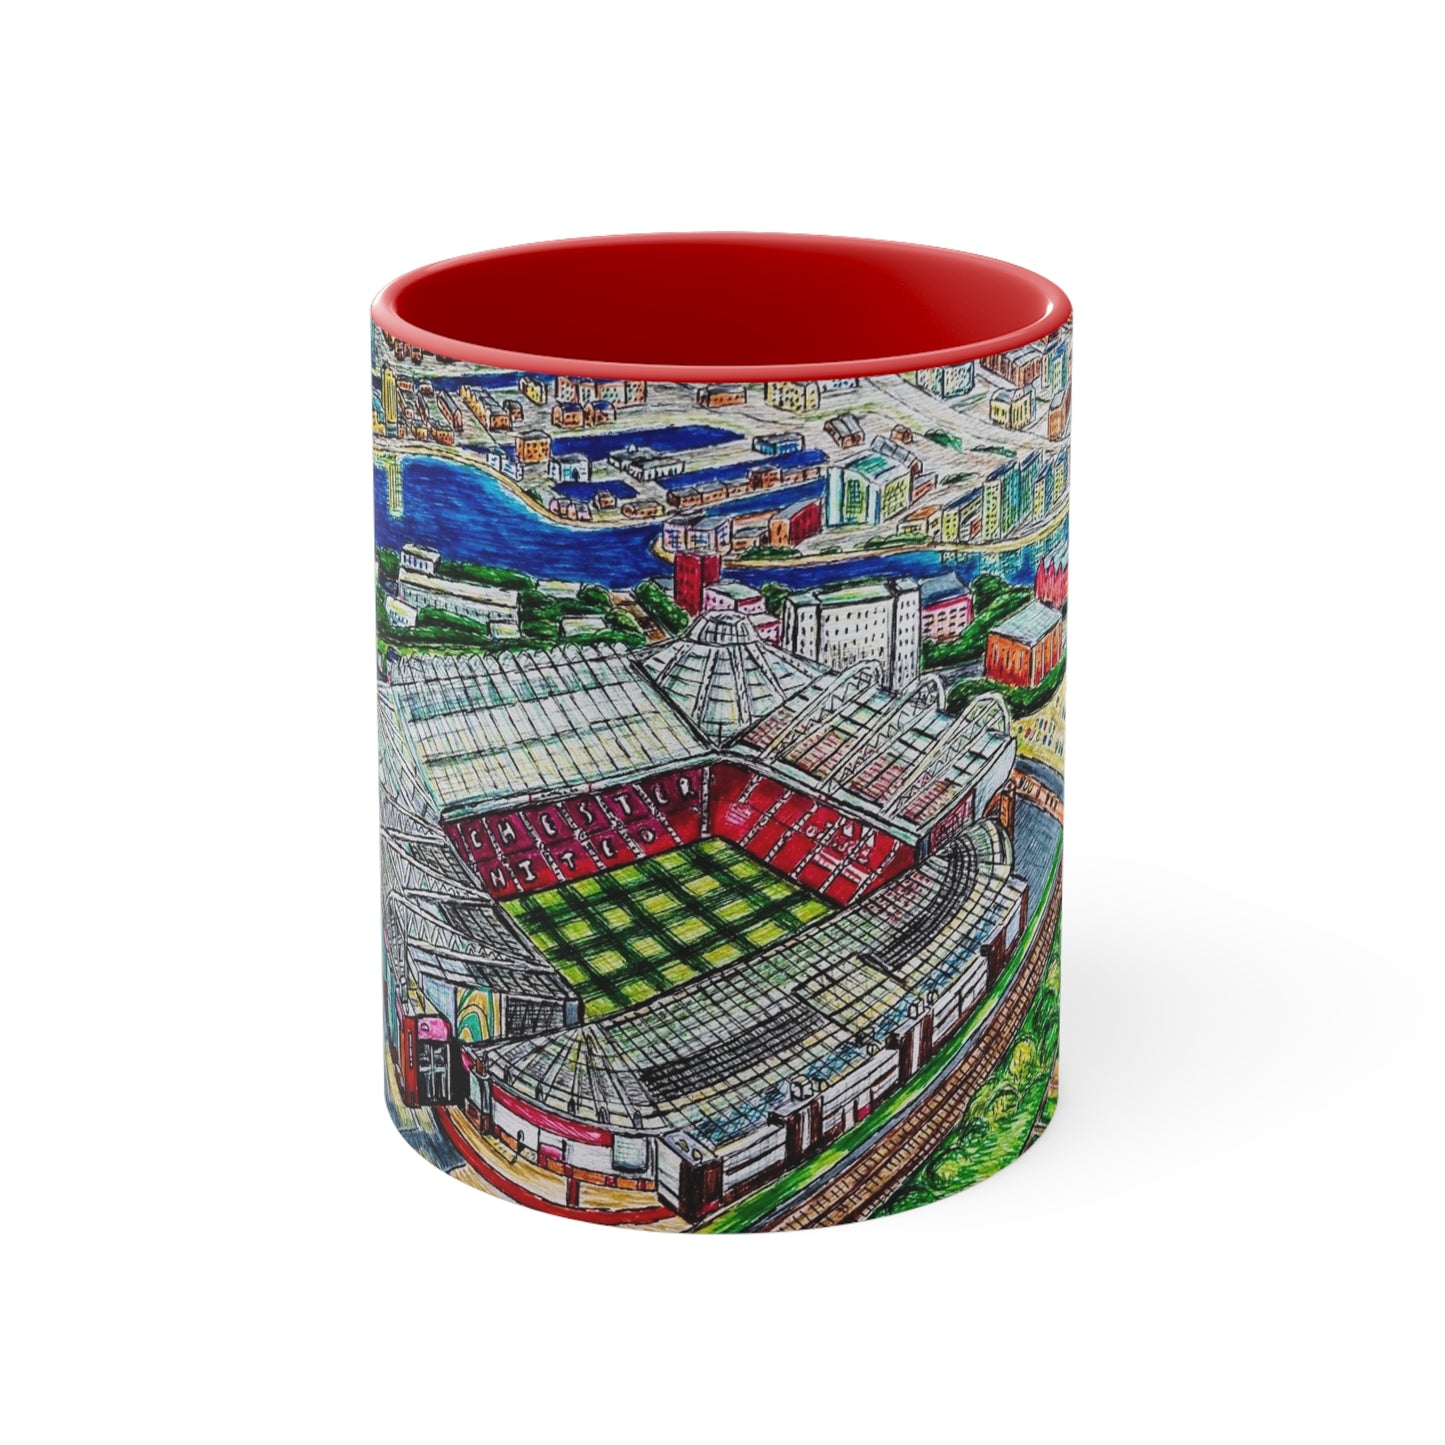 Coffee Mug, 11oz- Old Trafford (Manchester United) Design